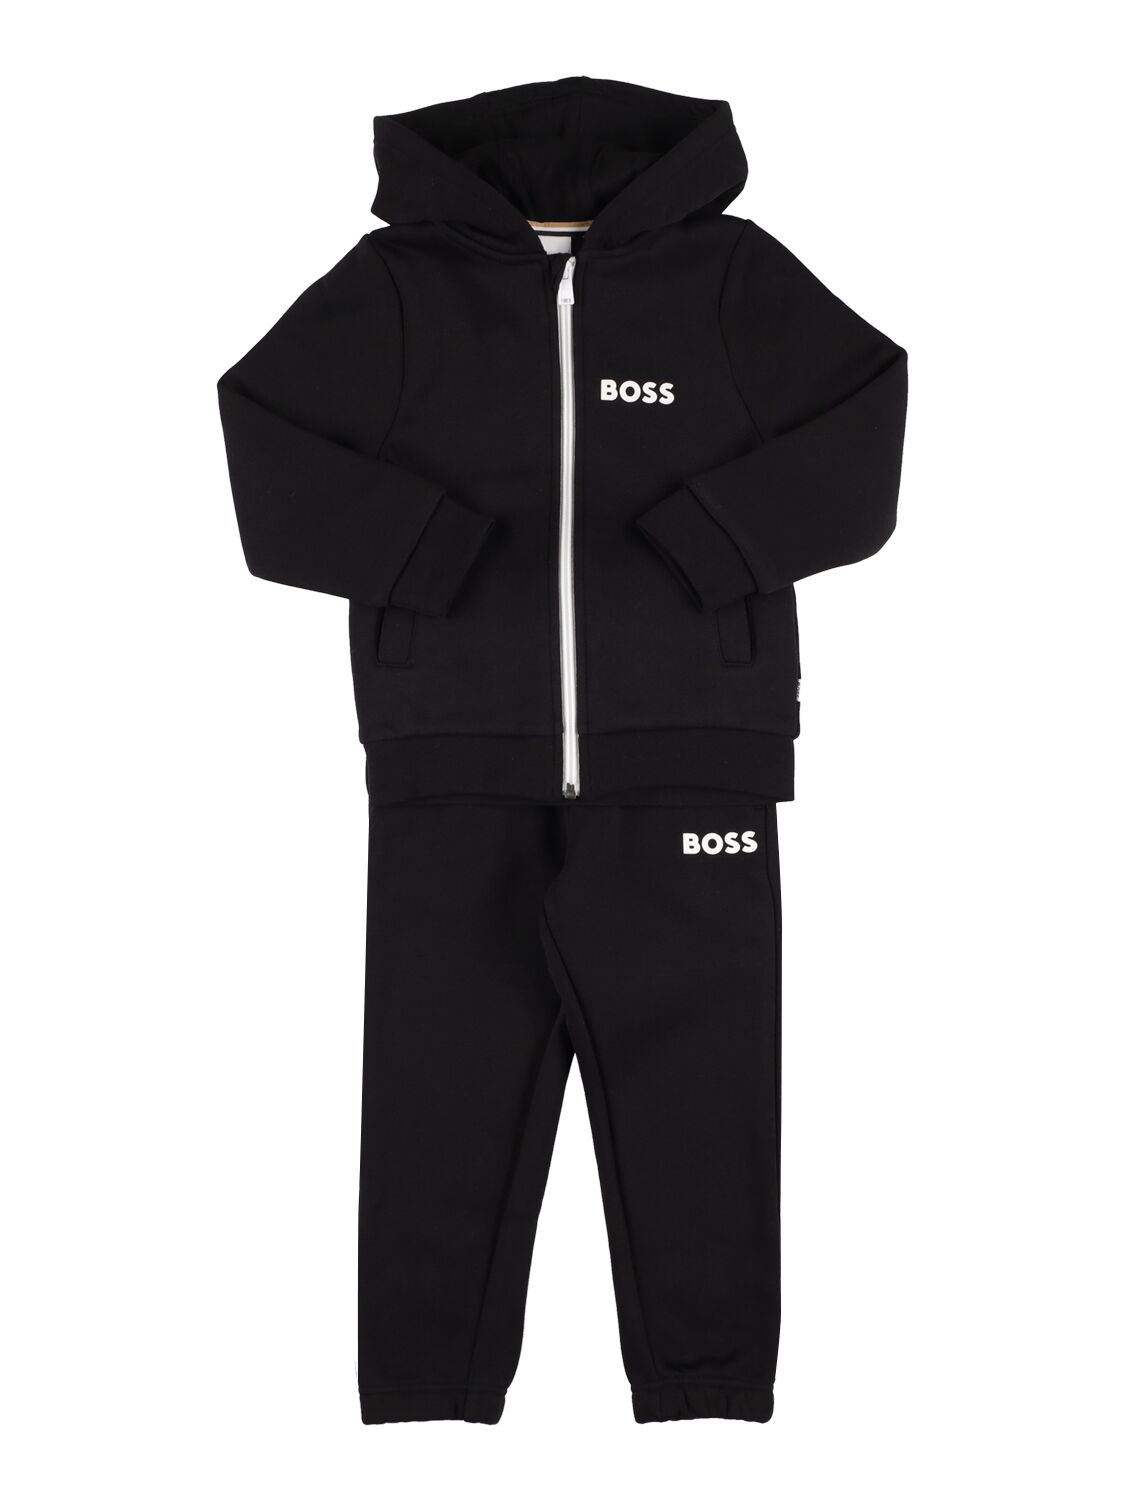 Hugo Boss Kids' Logo混棉连帽卫衣&运动裤 In Black